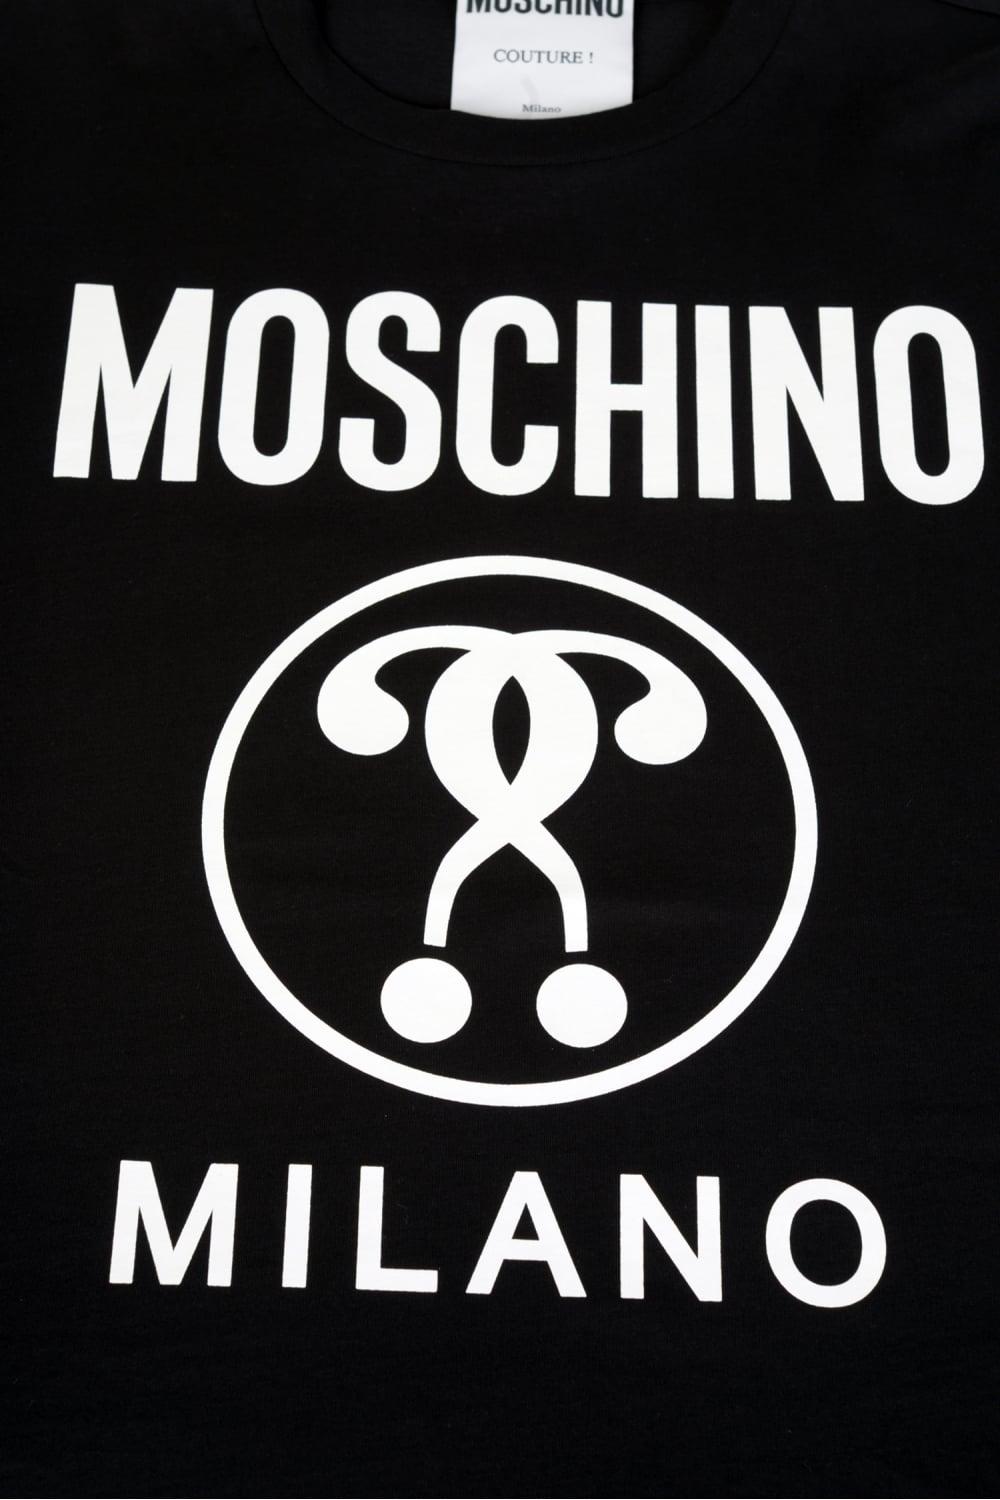 Moschino Milano Logo - MOSCHINO Moschino Milano Tshirt Black - Clothing from Circle Fashion UK